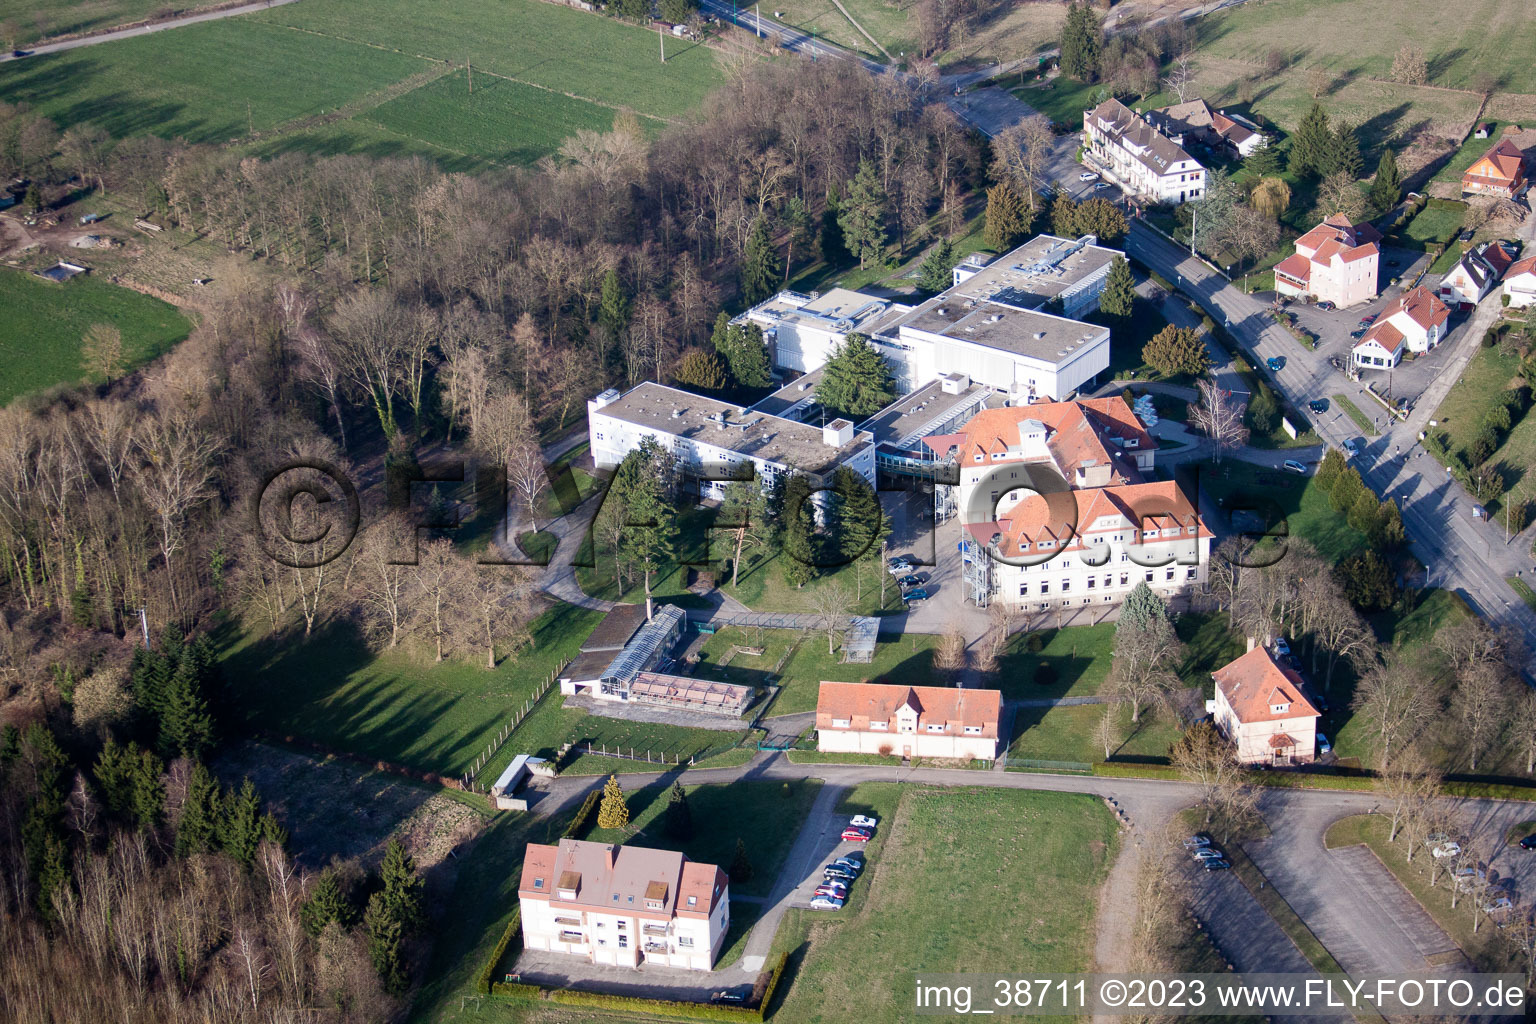 Morsbronn-les-Bains im Bundesland Bas-Rhin, Frankreich von der Drohne aus gesehen